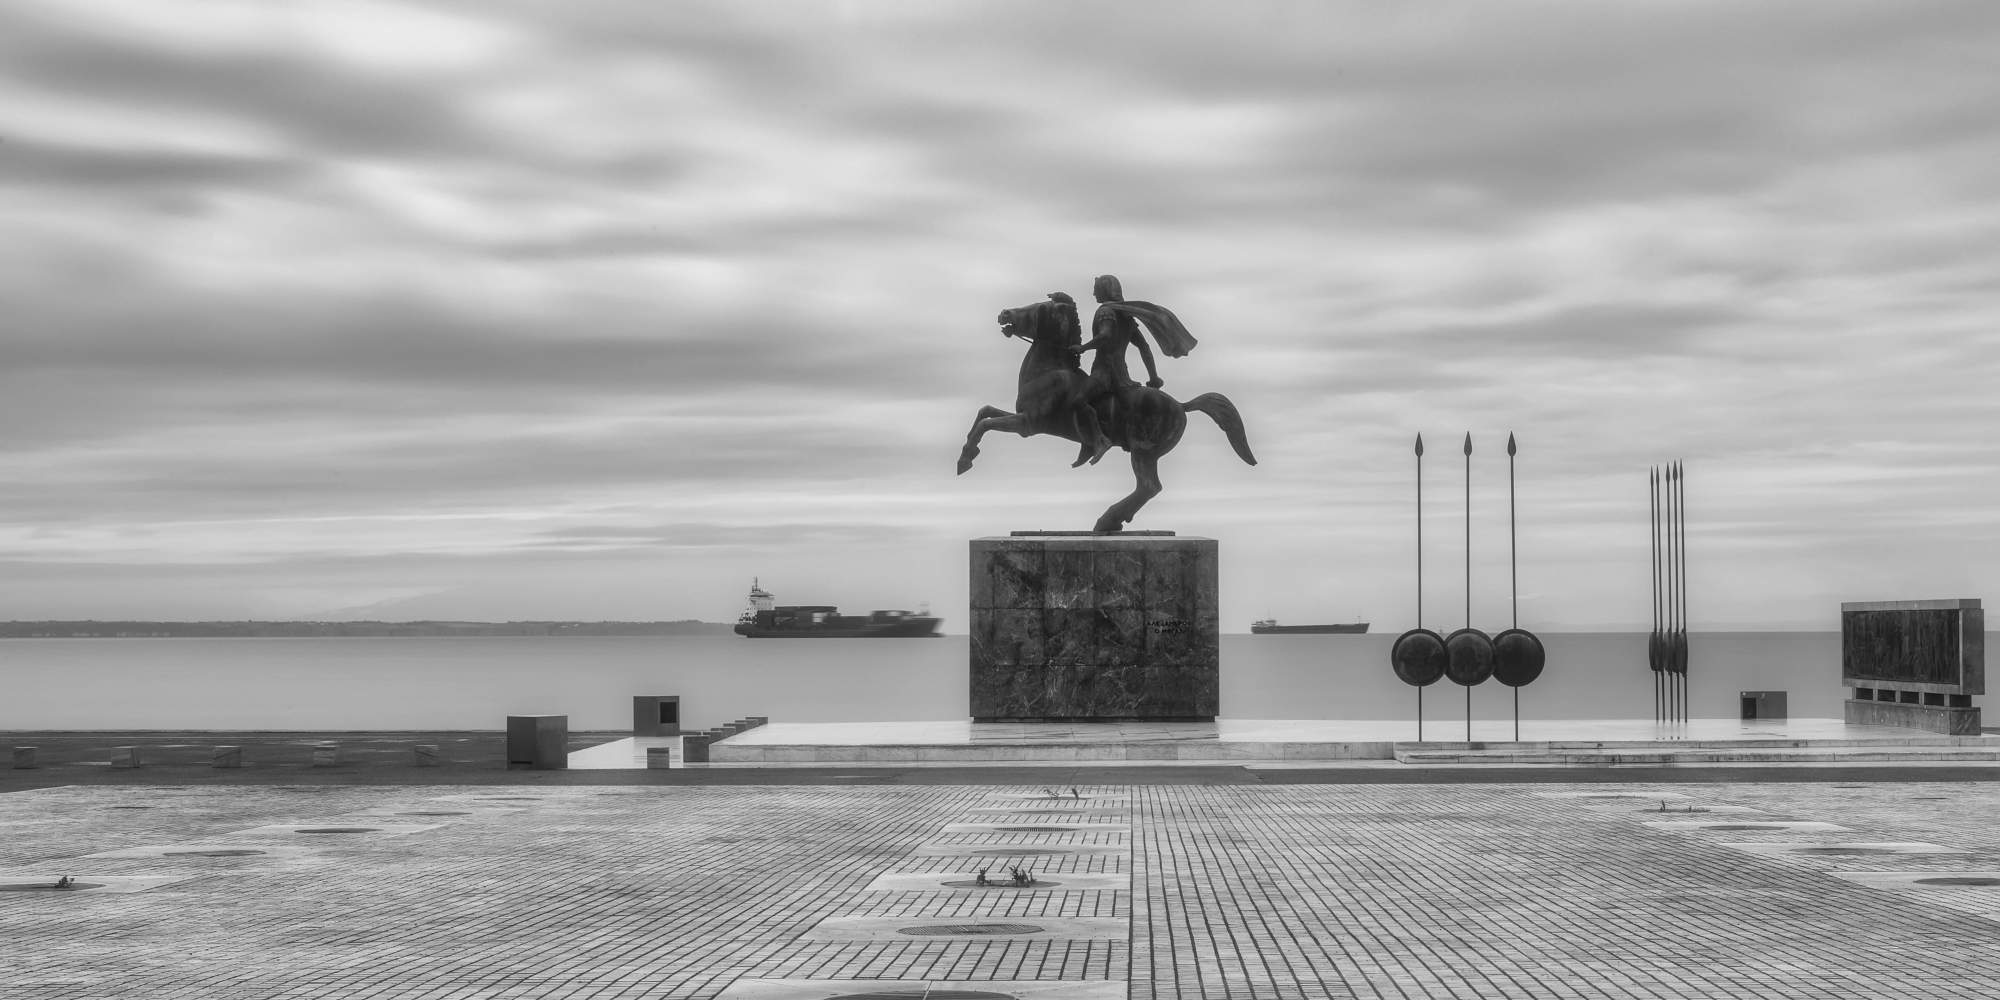 Το άγαλμα στην παραλία του Μεγάλου Αλεξάνδρου στην Θεσσαλονίκη